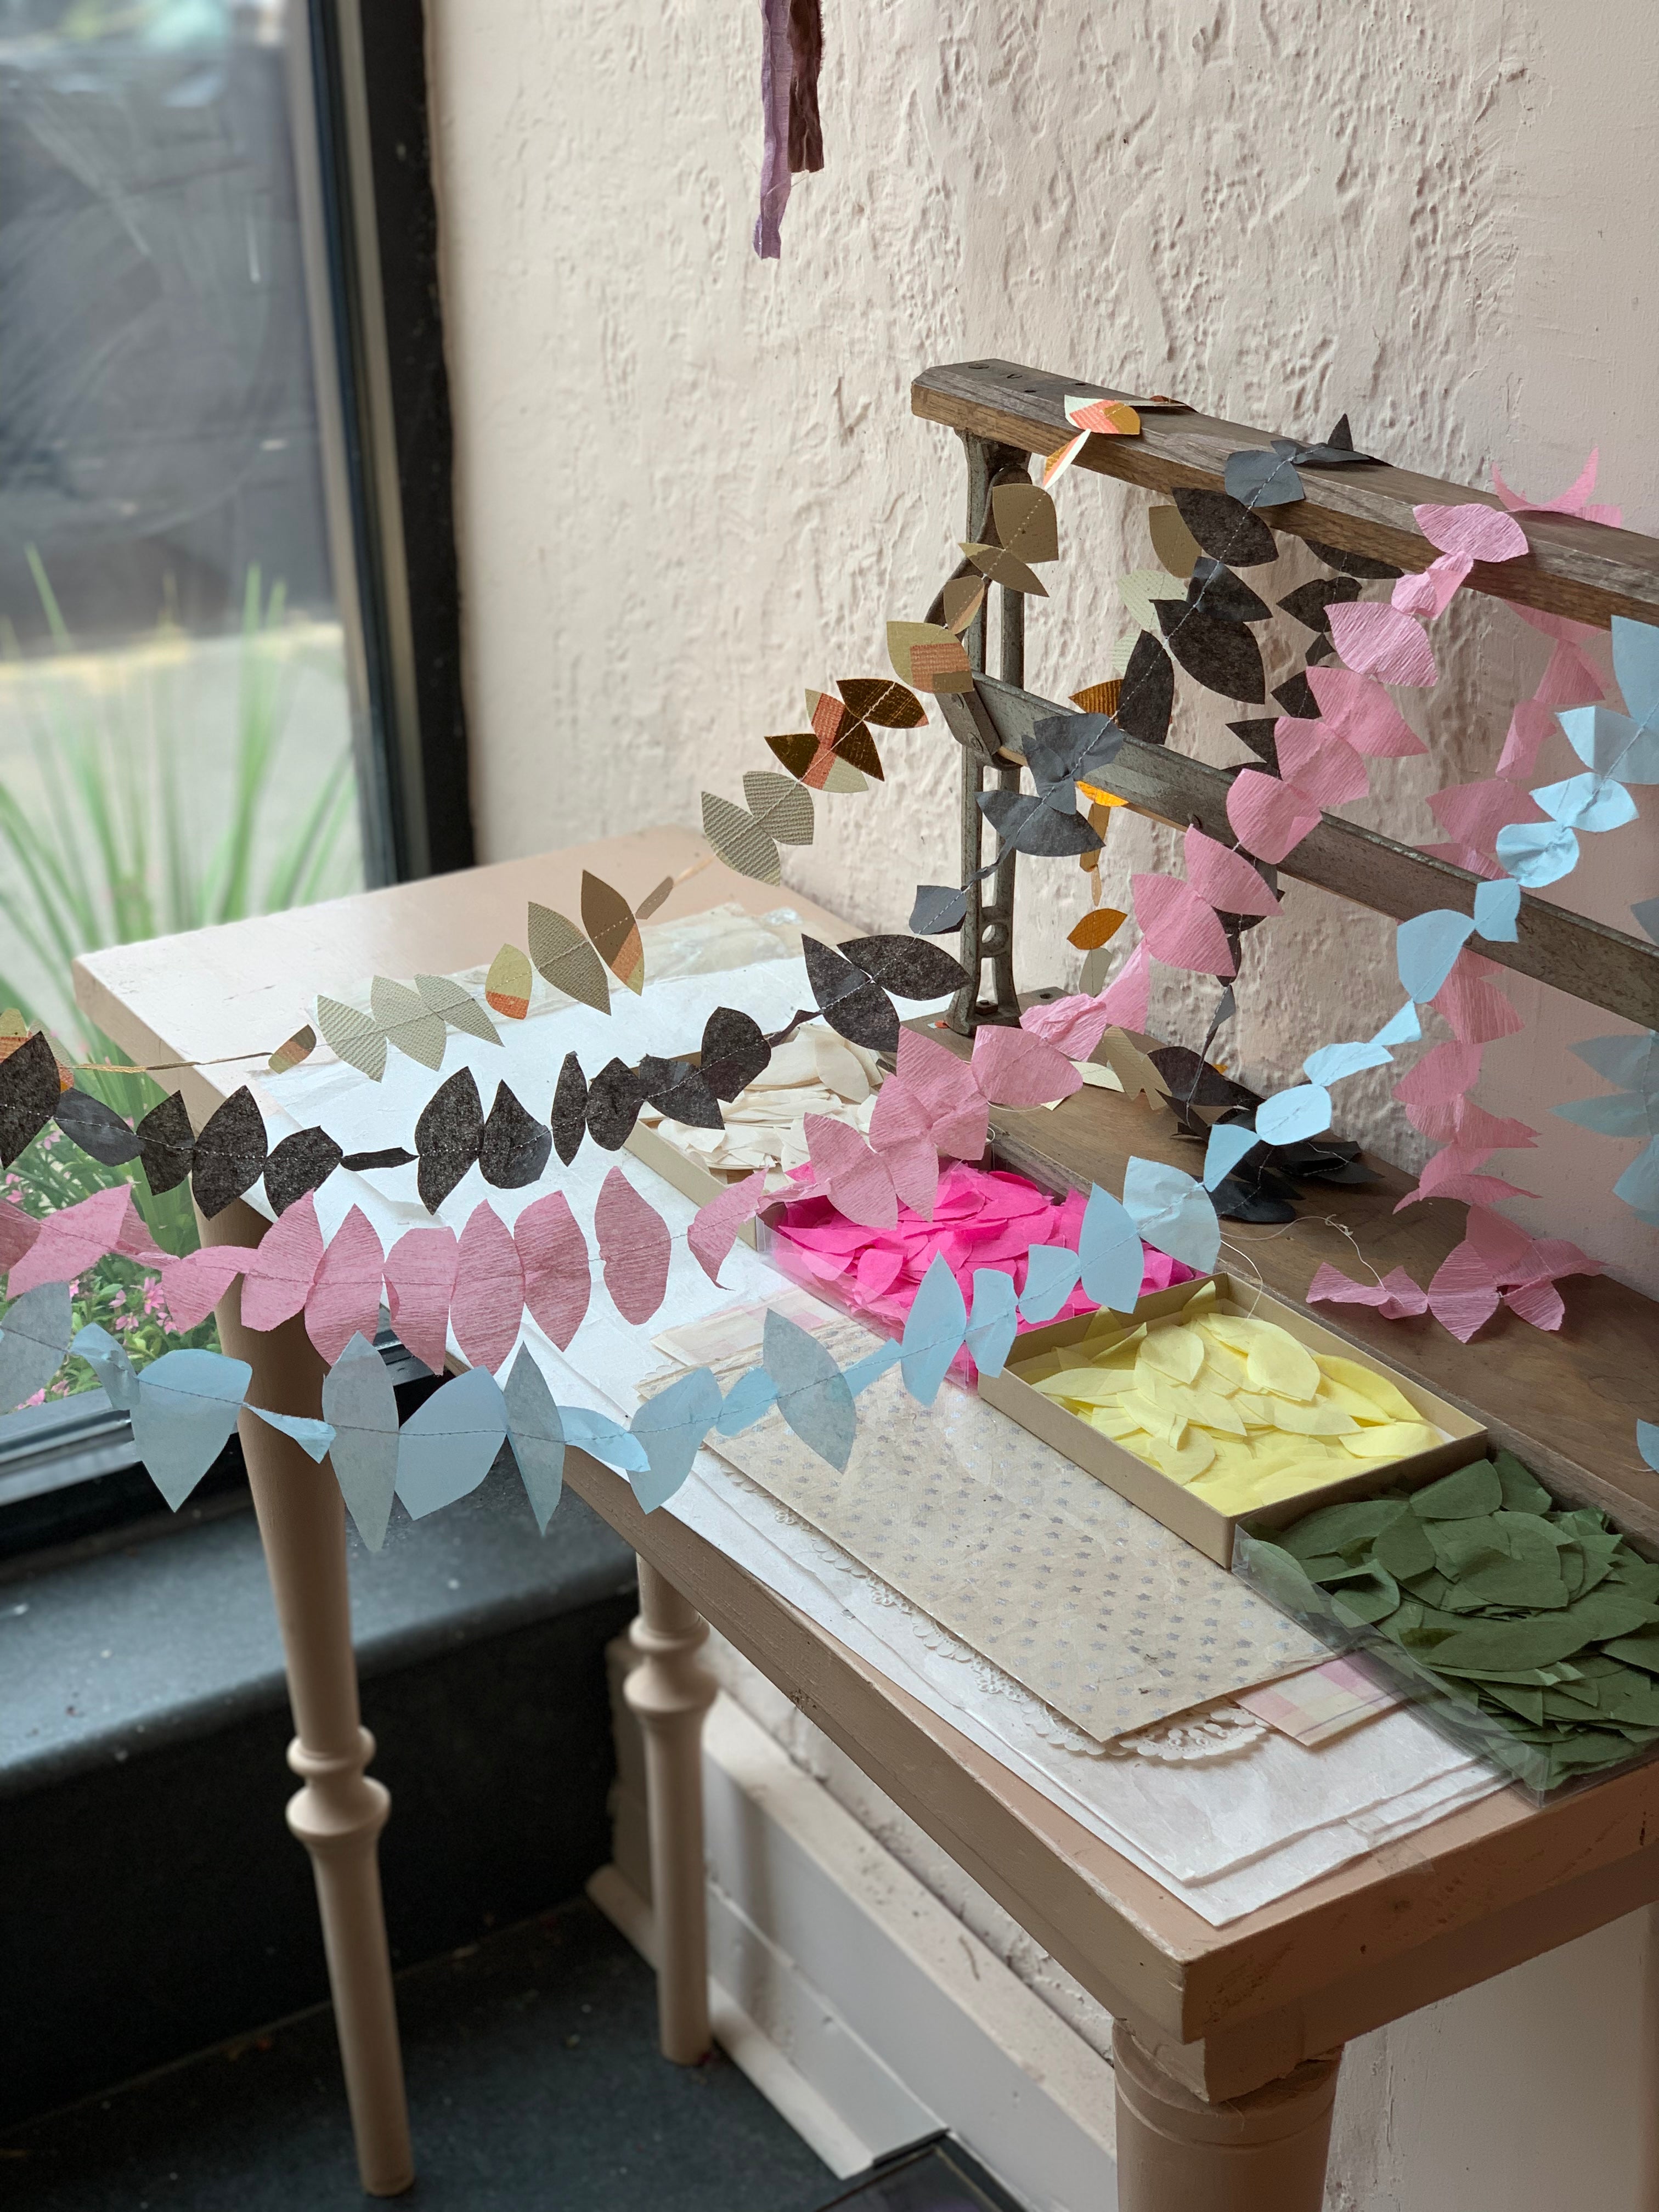 20 Fantastic Paper Flower Garlands - The Crafty Blog Stalker